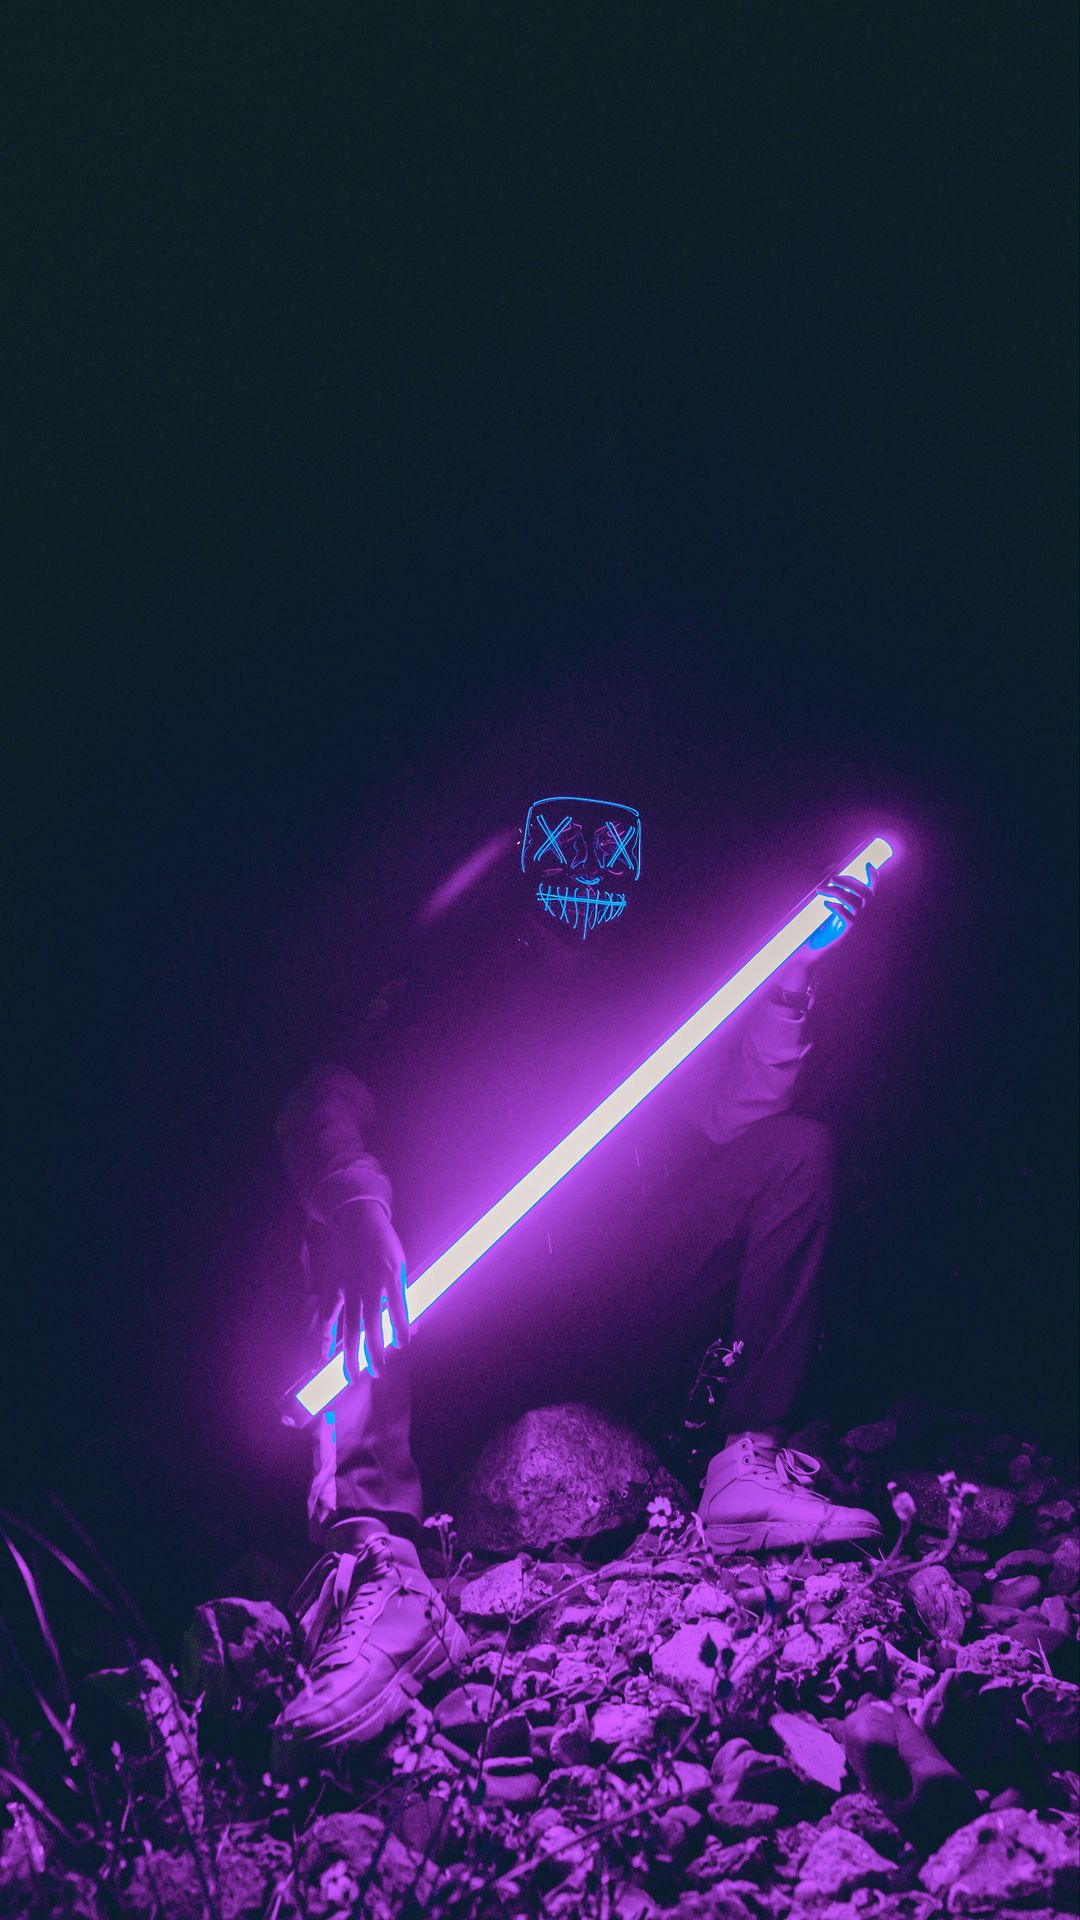 Download wallpaper x man mask neon glow purple samsung galaxy s s note sony xperia z z z z htc one lenovo vibe hd background